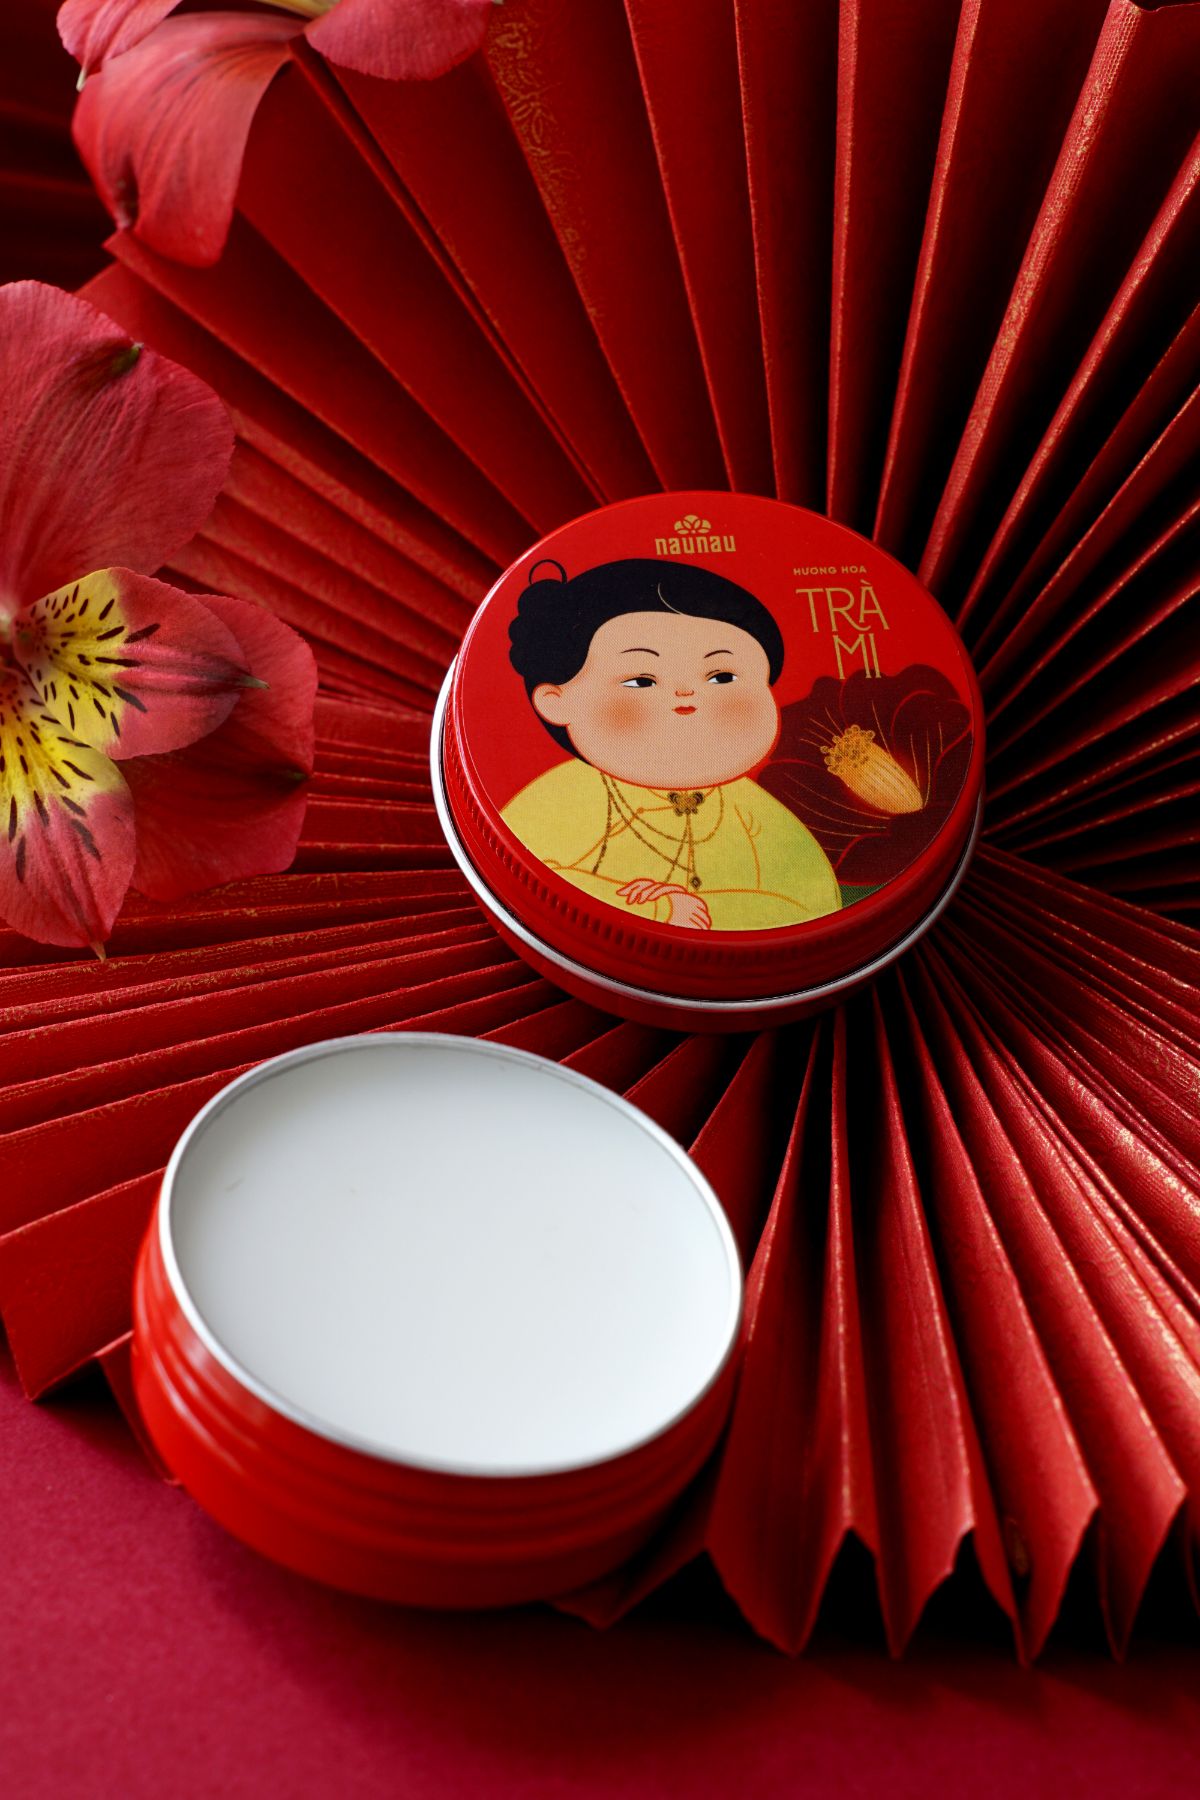 Trà Mi NauNau ra mắt bộ sưu tập nước hoa khô mang đậm dấu ấn người Việt